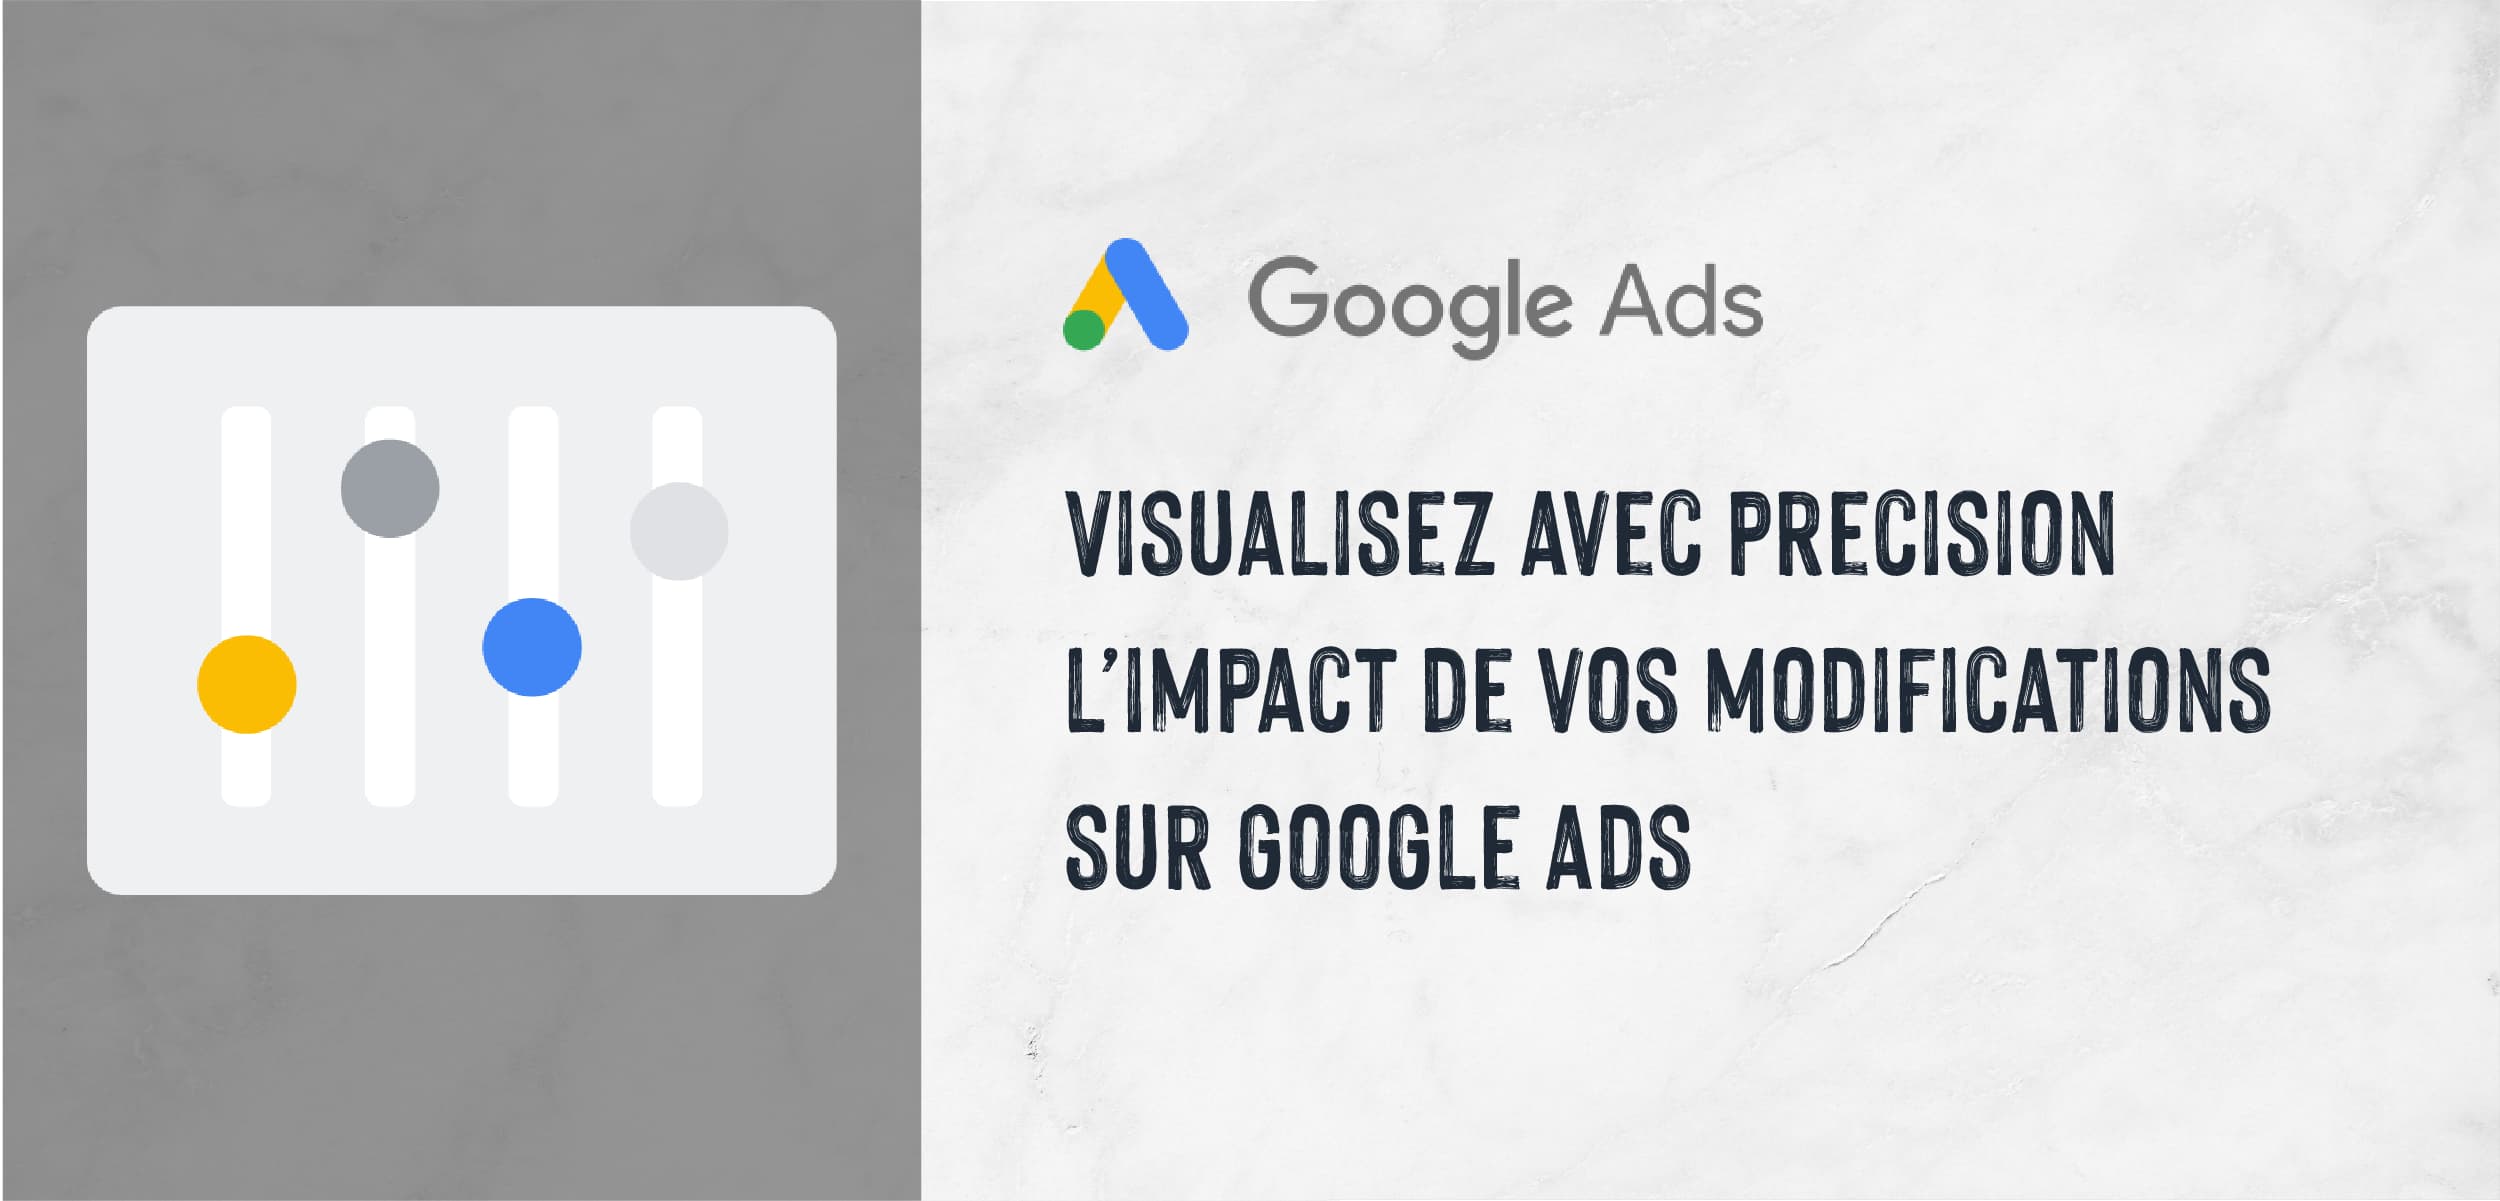 |New| Visualisez avec précision l'impact de vos modifications sur Google Ads